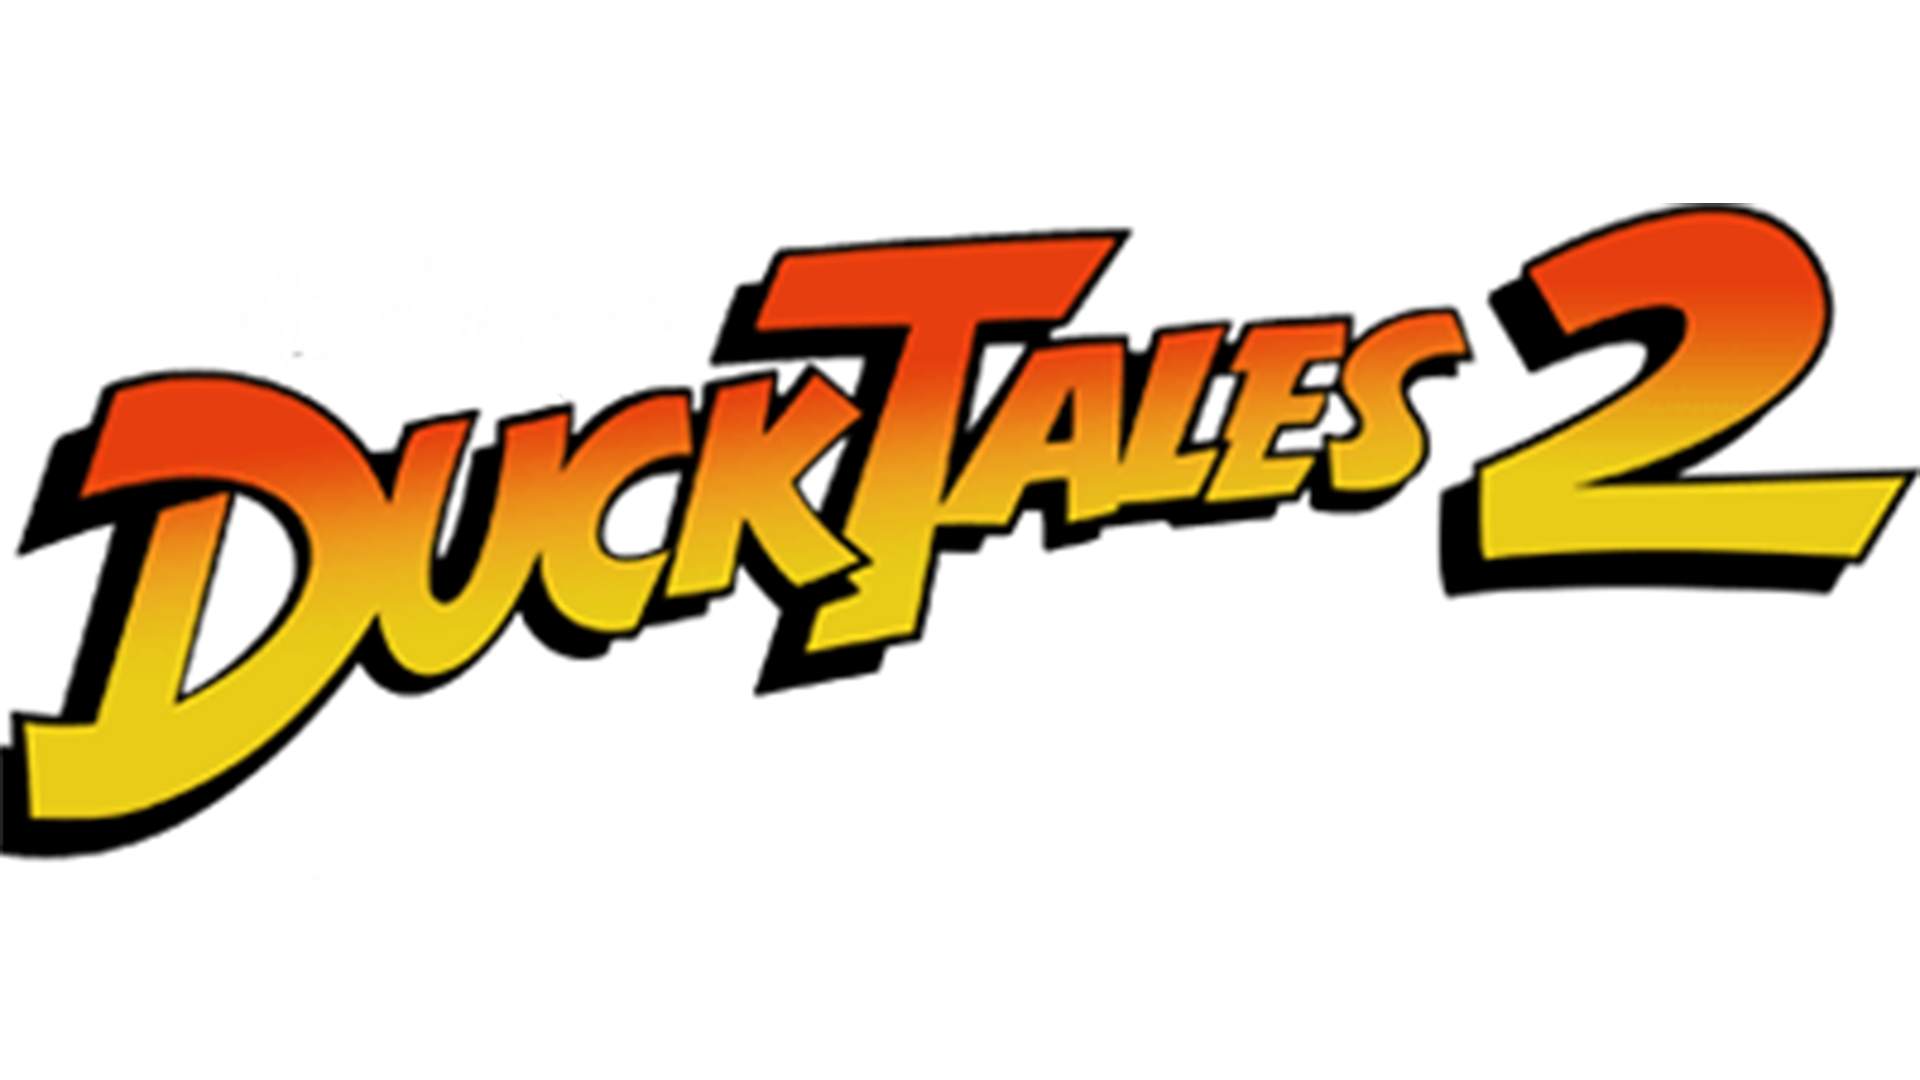 Ducktales 2 (NES) Logo